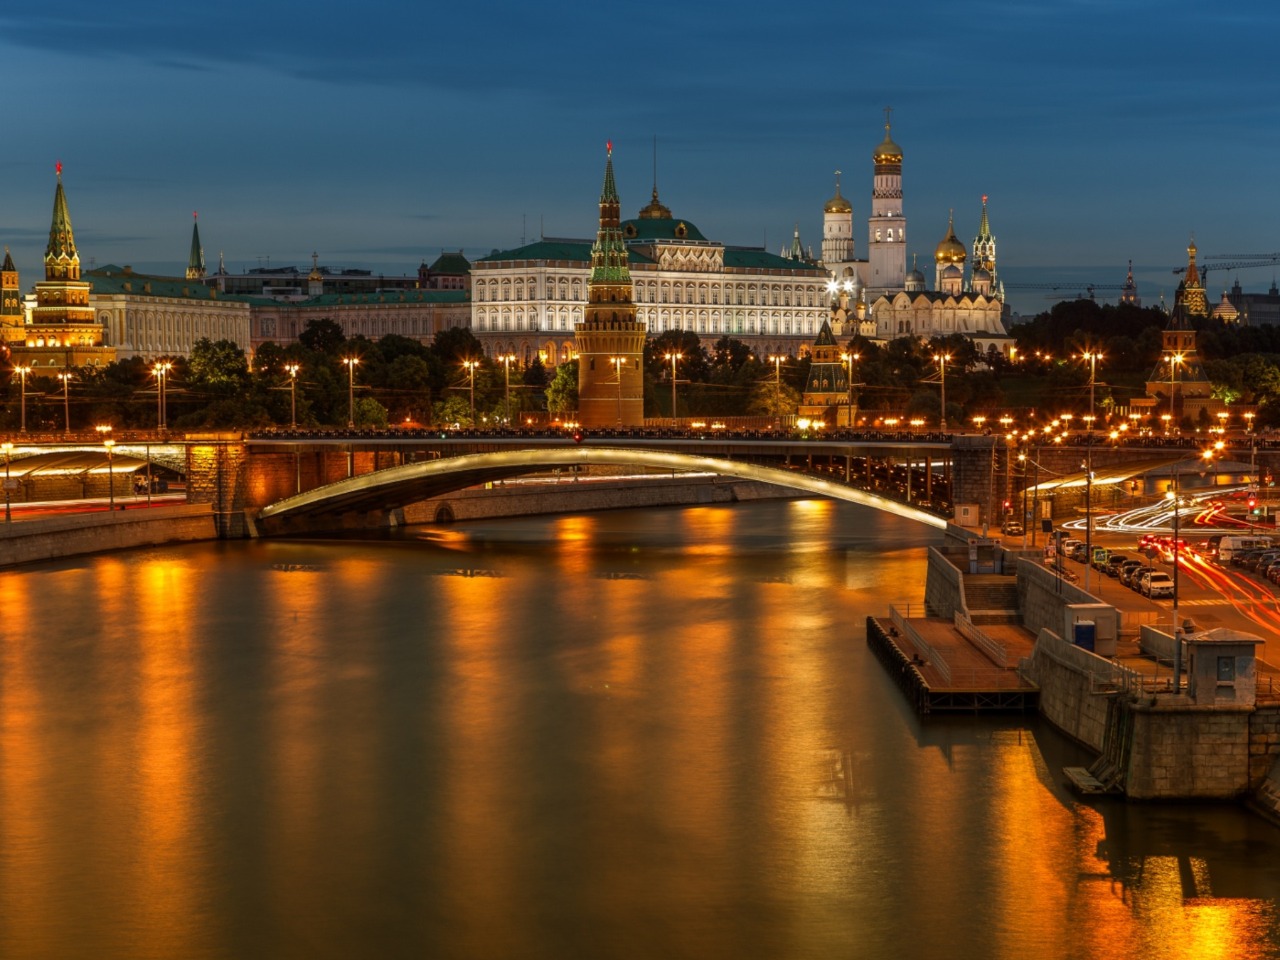 Вечерняя Москва | Цена 1387.5₽, отзывы, описание экскурсии